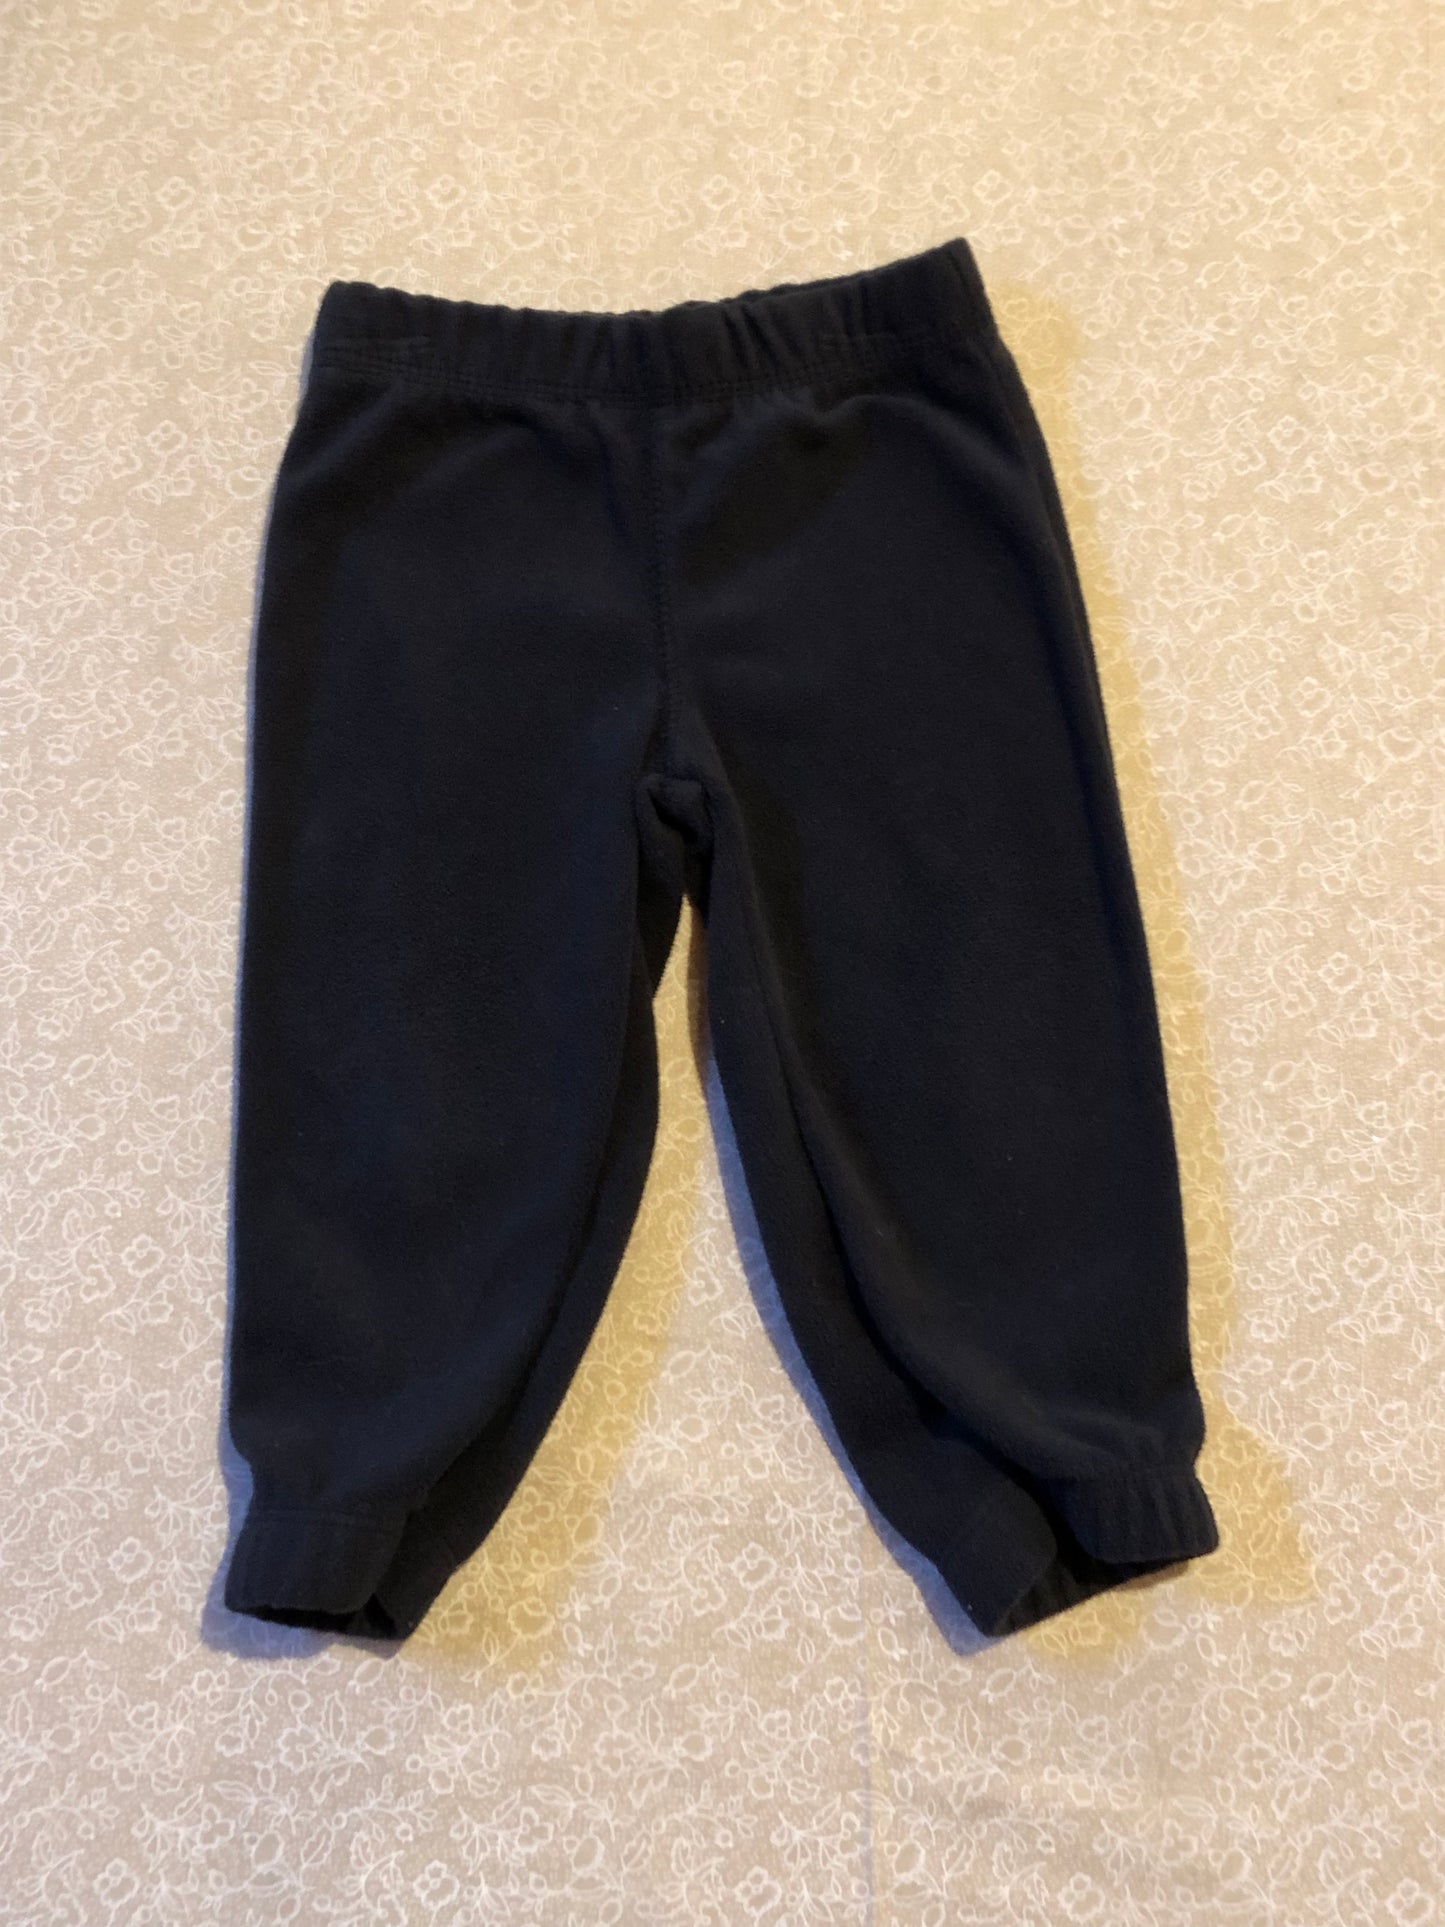 12-months-pants-carters-grey-black-fleece